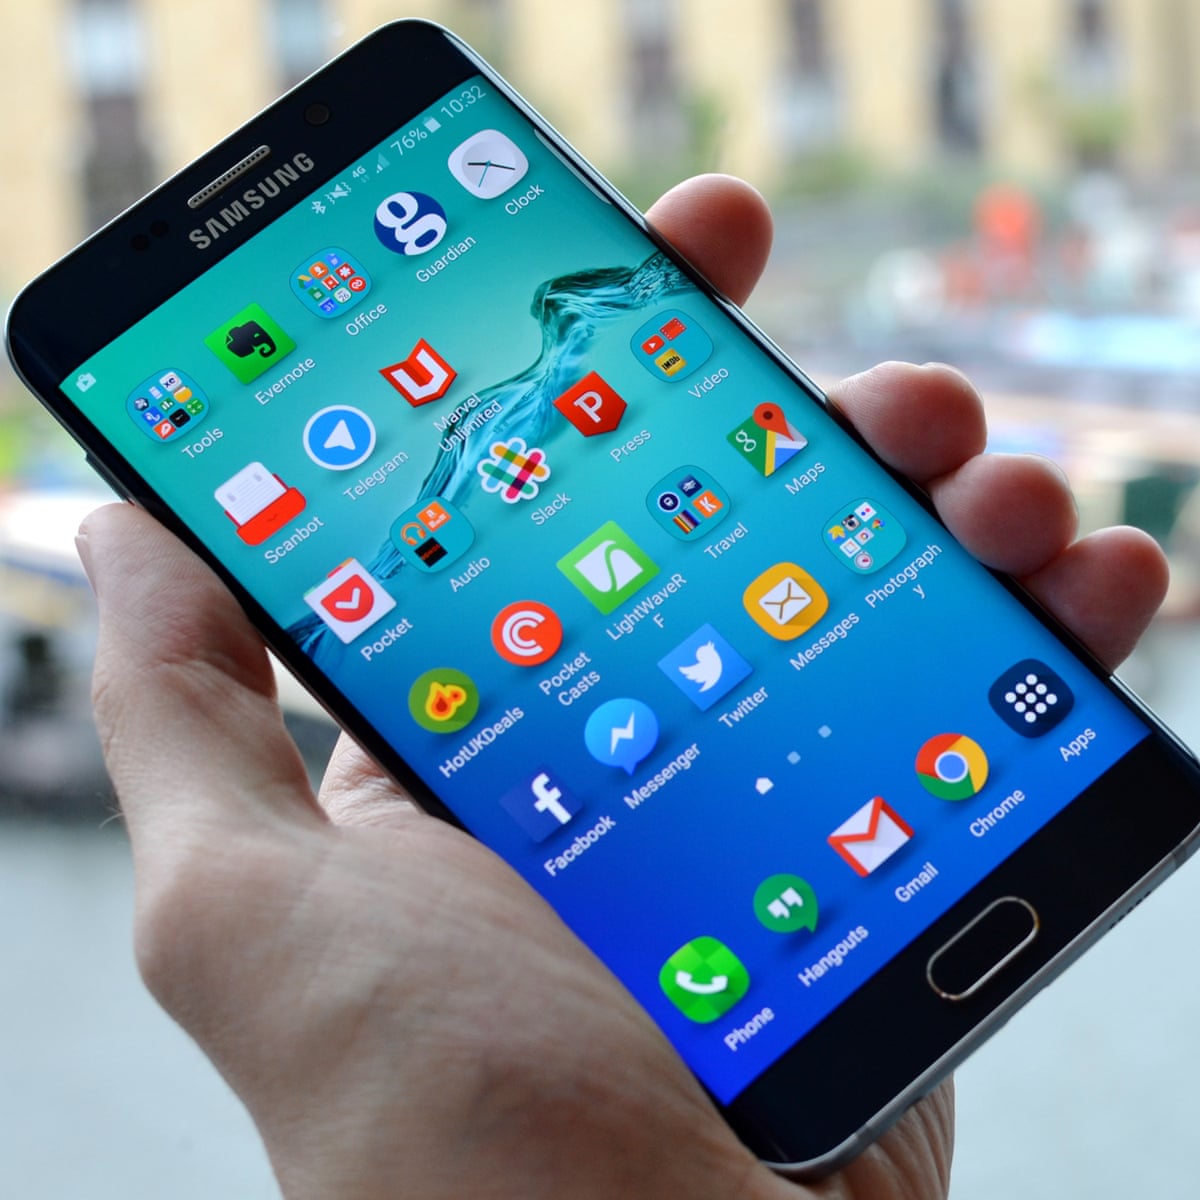 voorspelling verkopen professioneel Samsung Galaxy S6 Edge+ review: the curvy 'iPhone 6 Plus killer' |  Smartphones | The Guardian